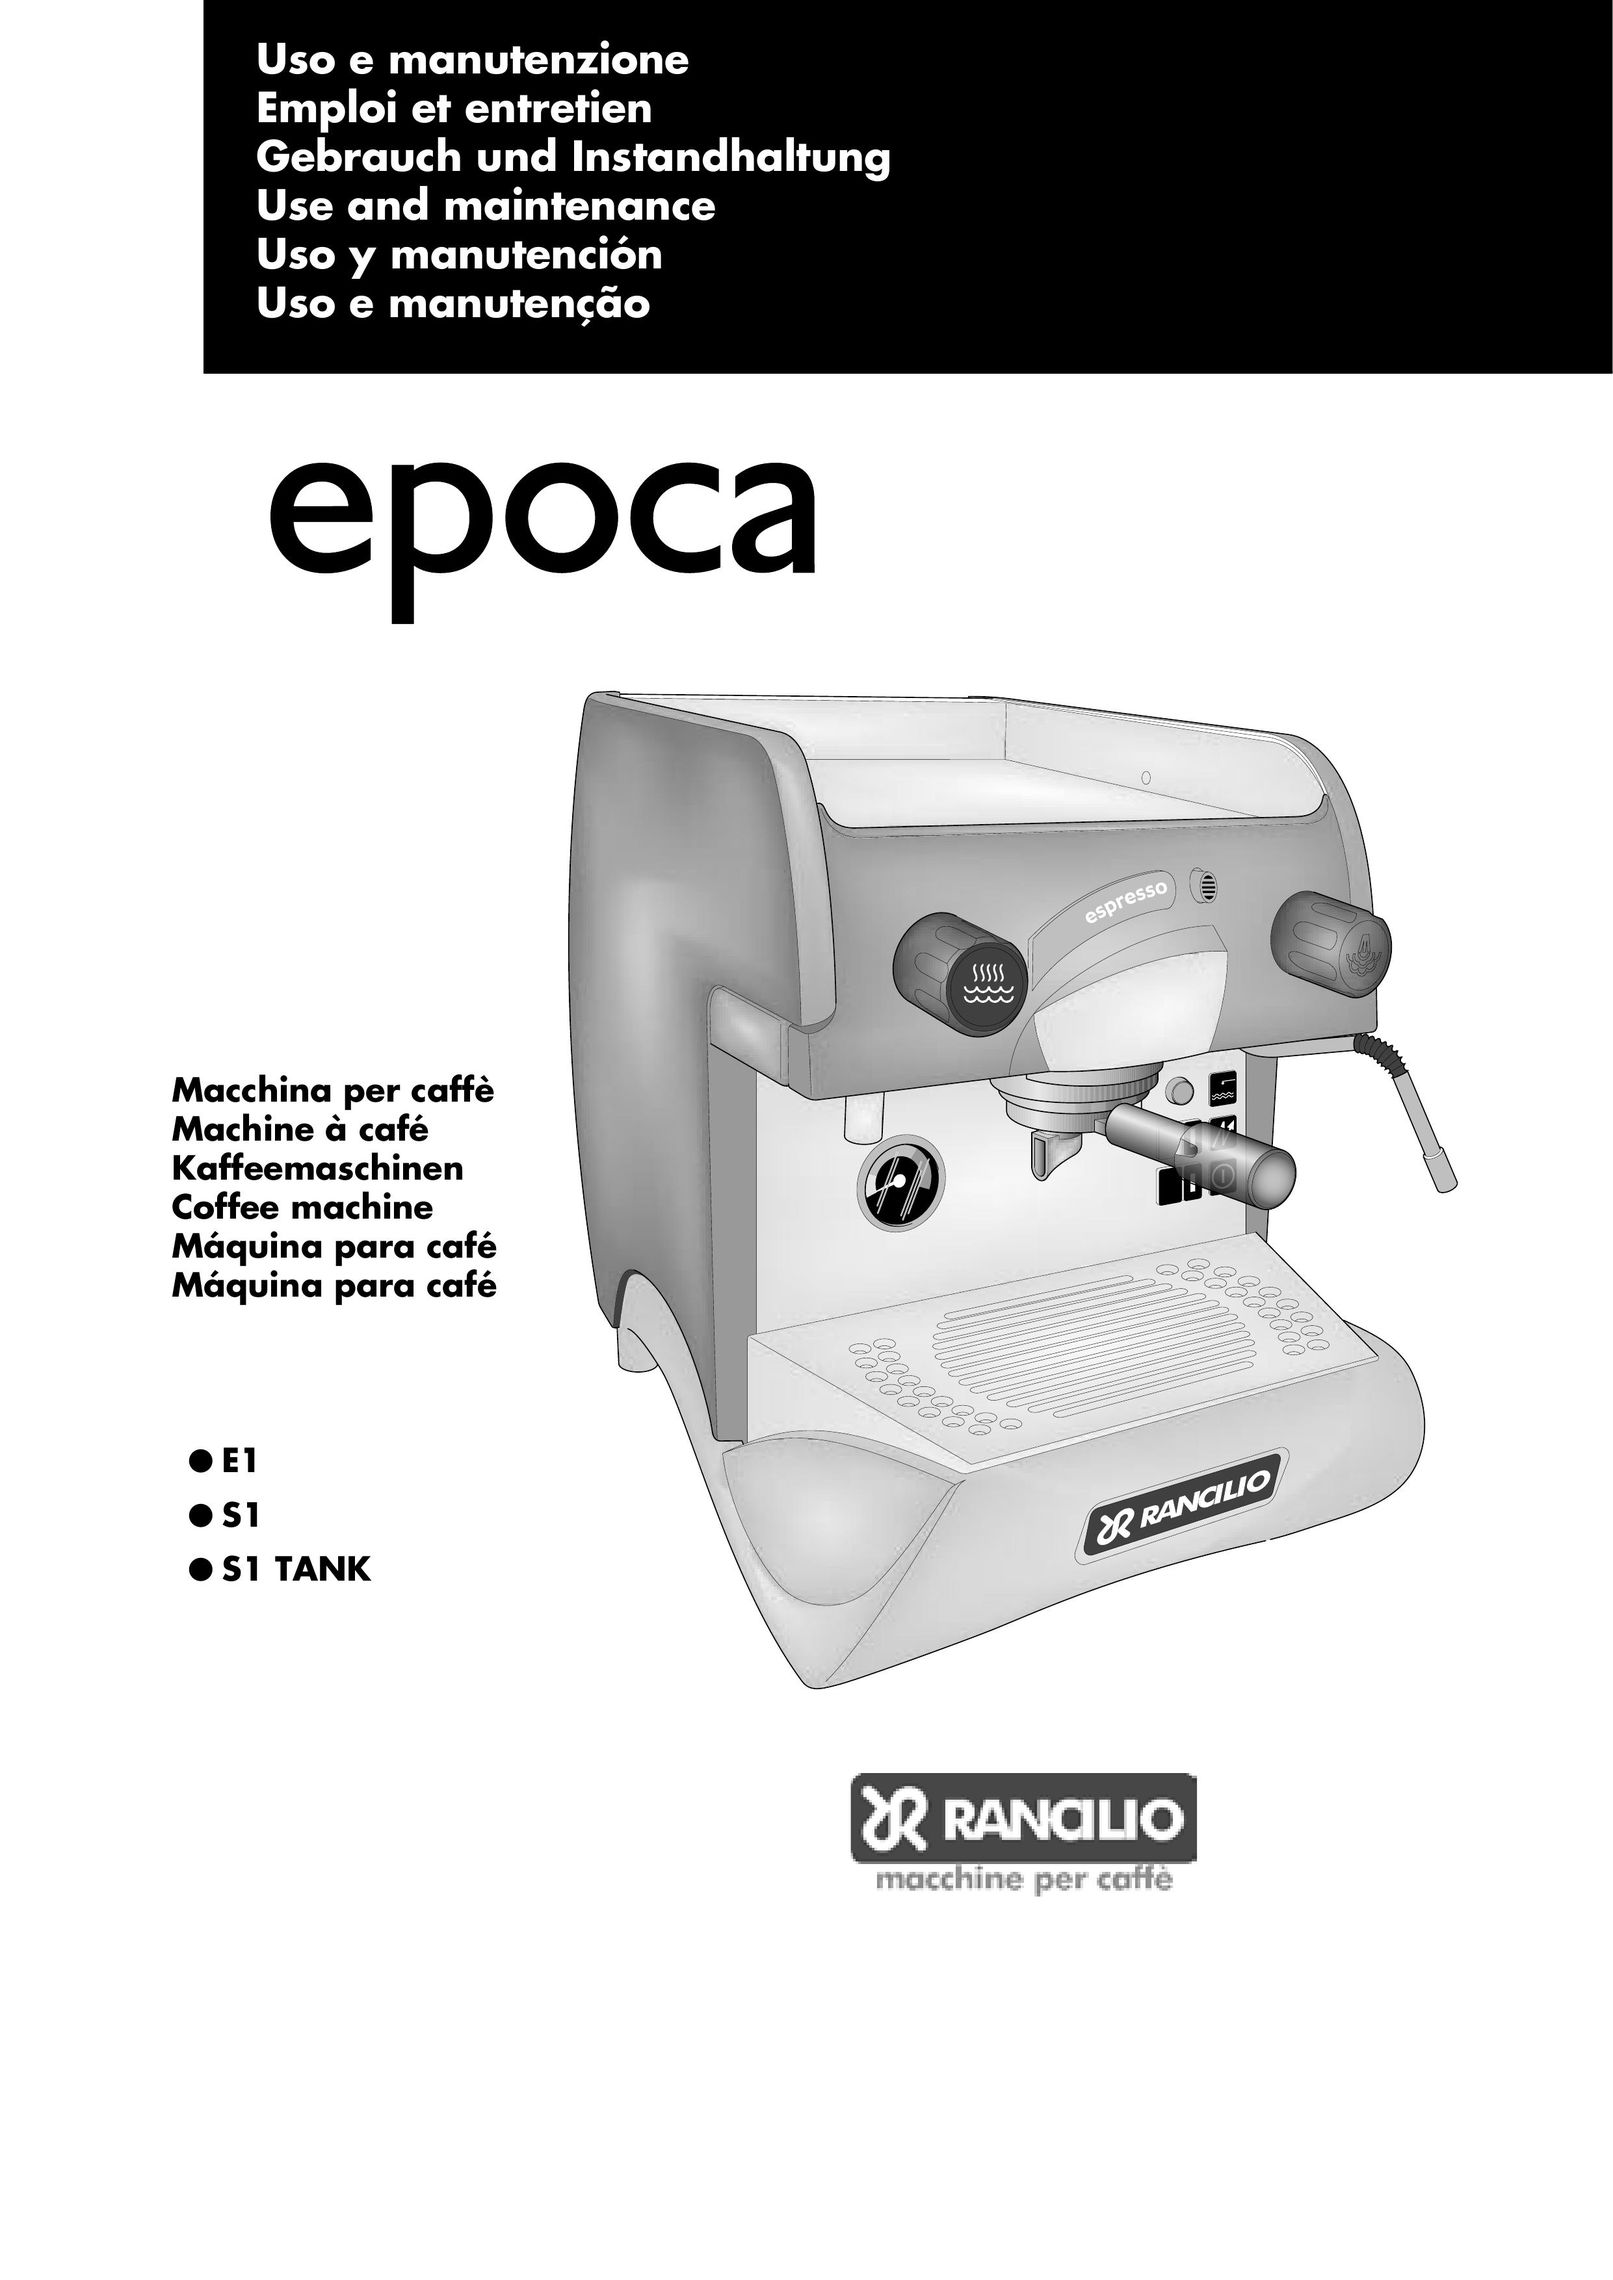 Rancilio S1 TANK Espresso Maker User Manual